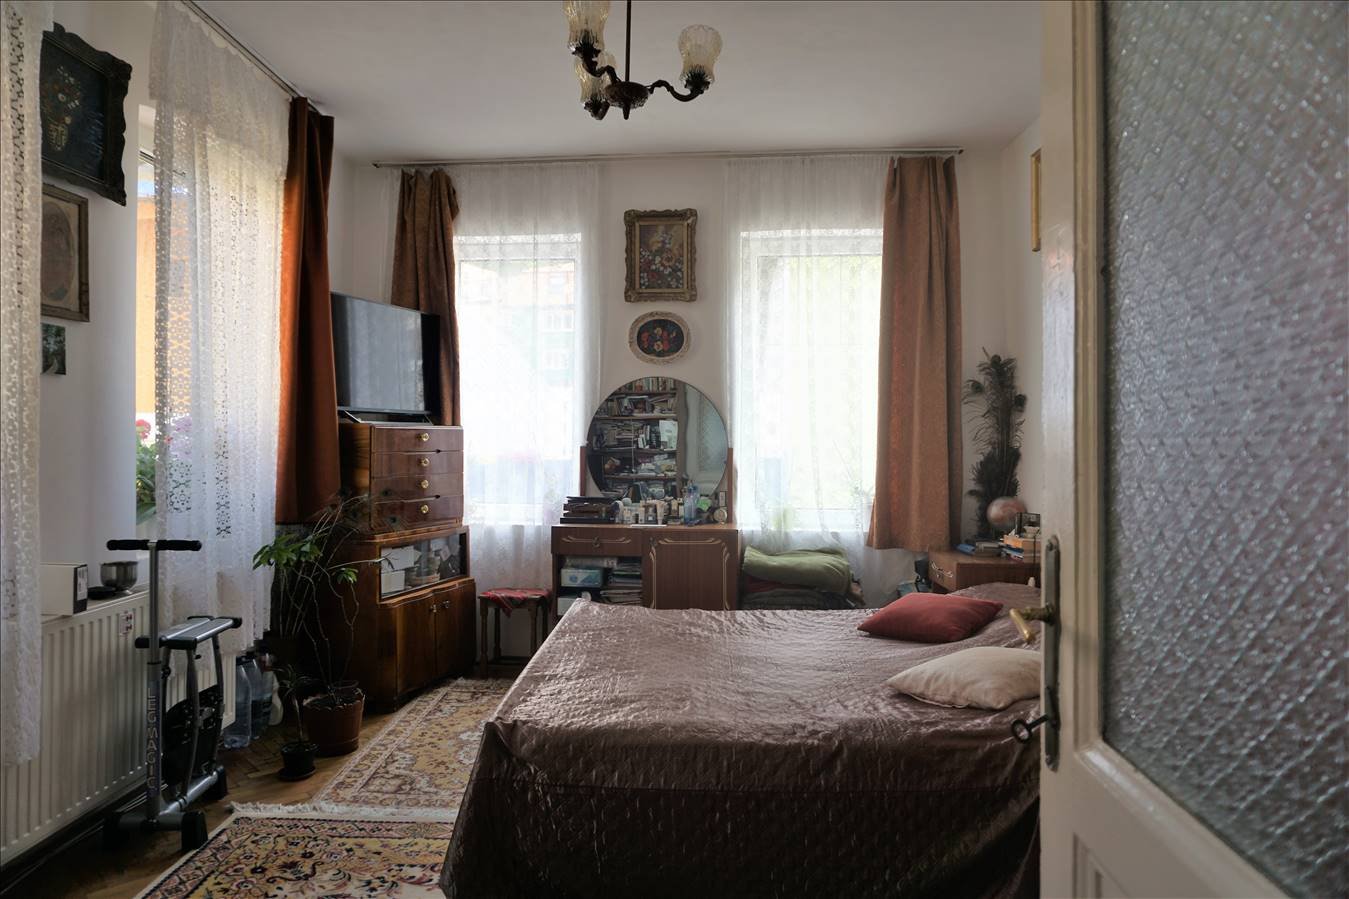 Casa 2 camere, singur in curte, Scheii Brasovului - imaginea 1